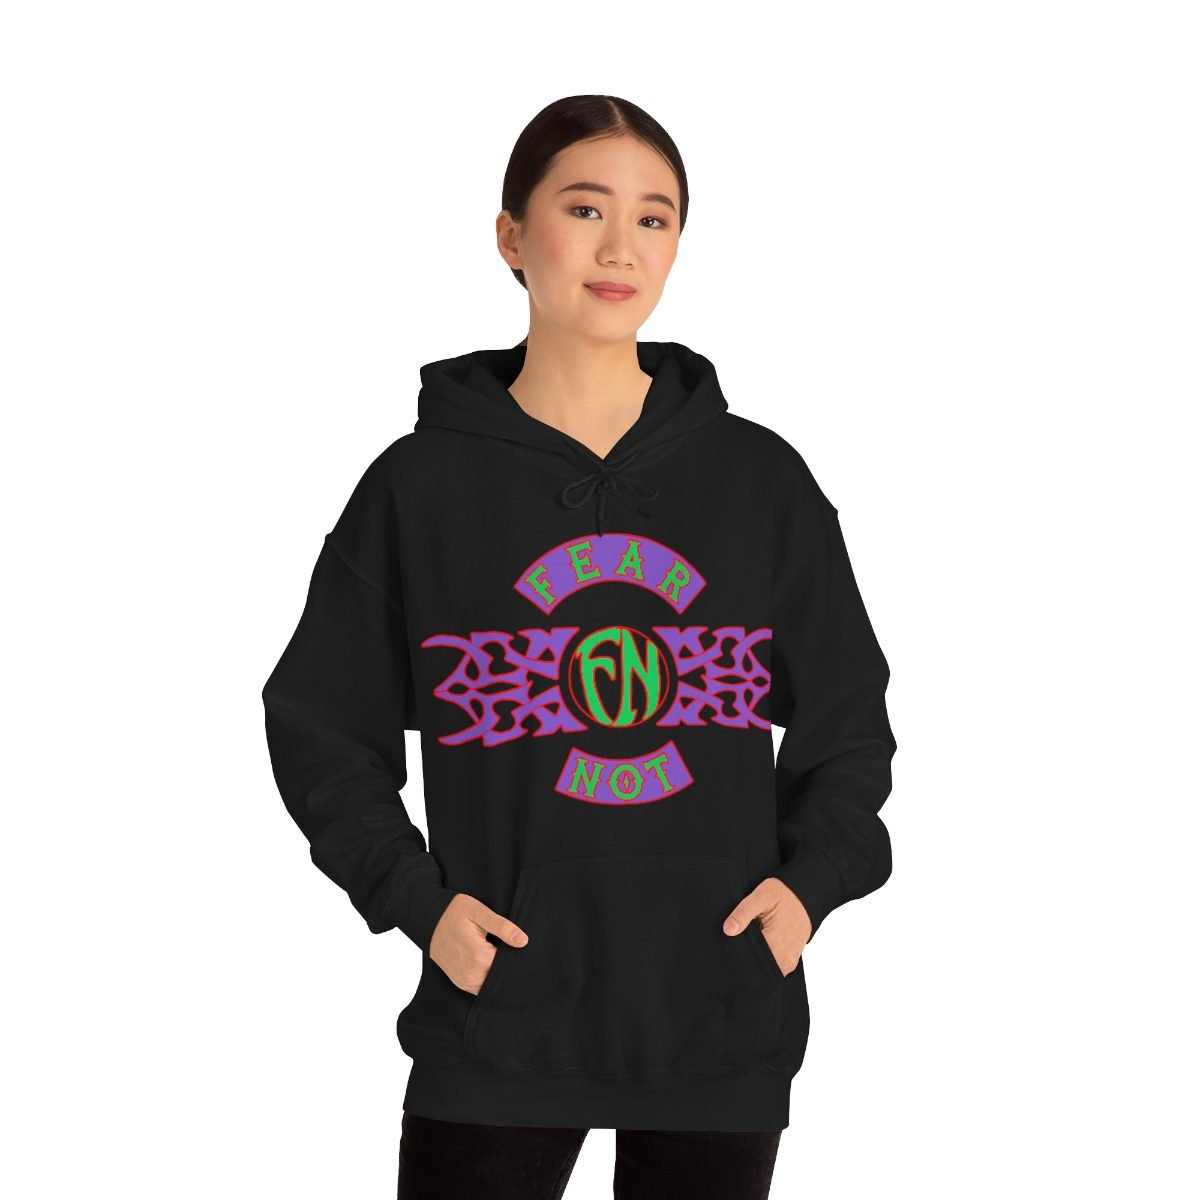 Fear Not Old School Tribal Logo Pullover Hooded Sweatshirt 185MD